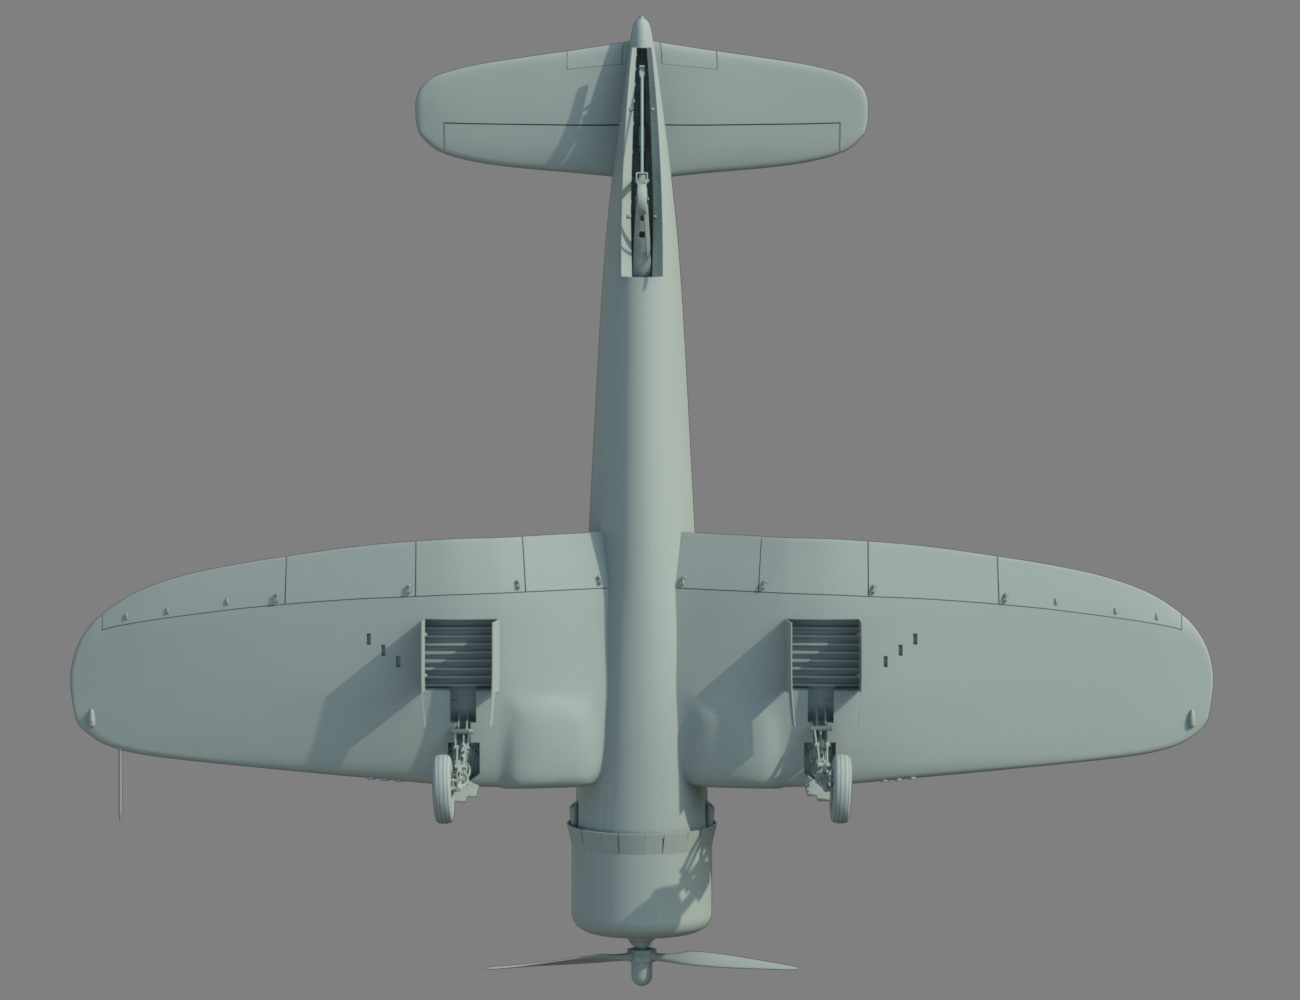 Whistling Death Warplane by: DarkEdgeDesign, 3D Models by Daz 3D